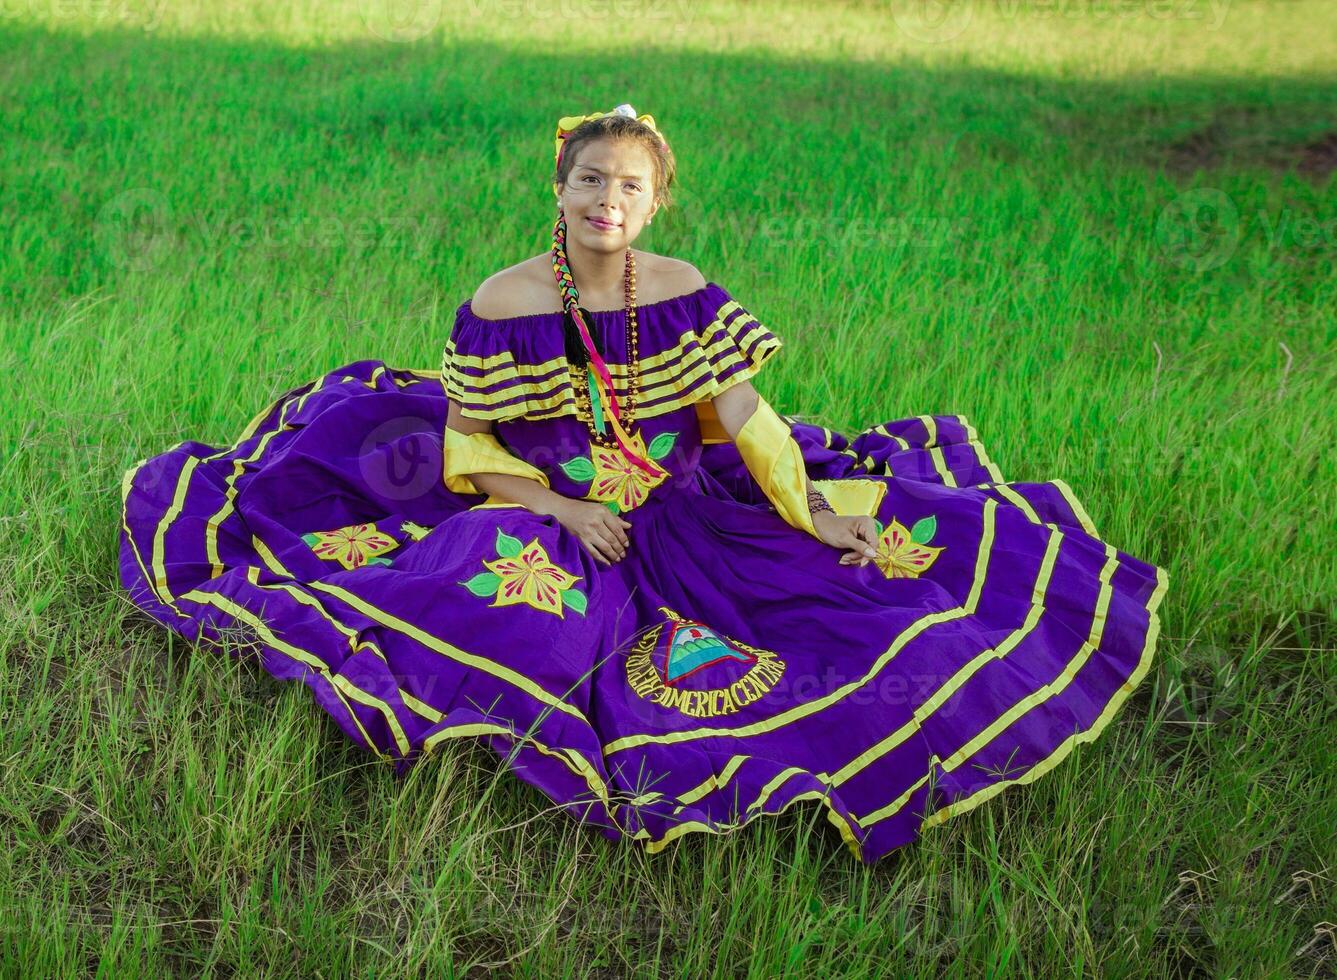 Jeune nicaraguayen femme dans traditionnel populaire costume séance sur le herbe dans le champ, portrait de nicaraguayen femme dans populaire costume séance sur le herbe photo